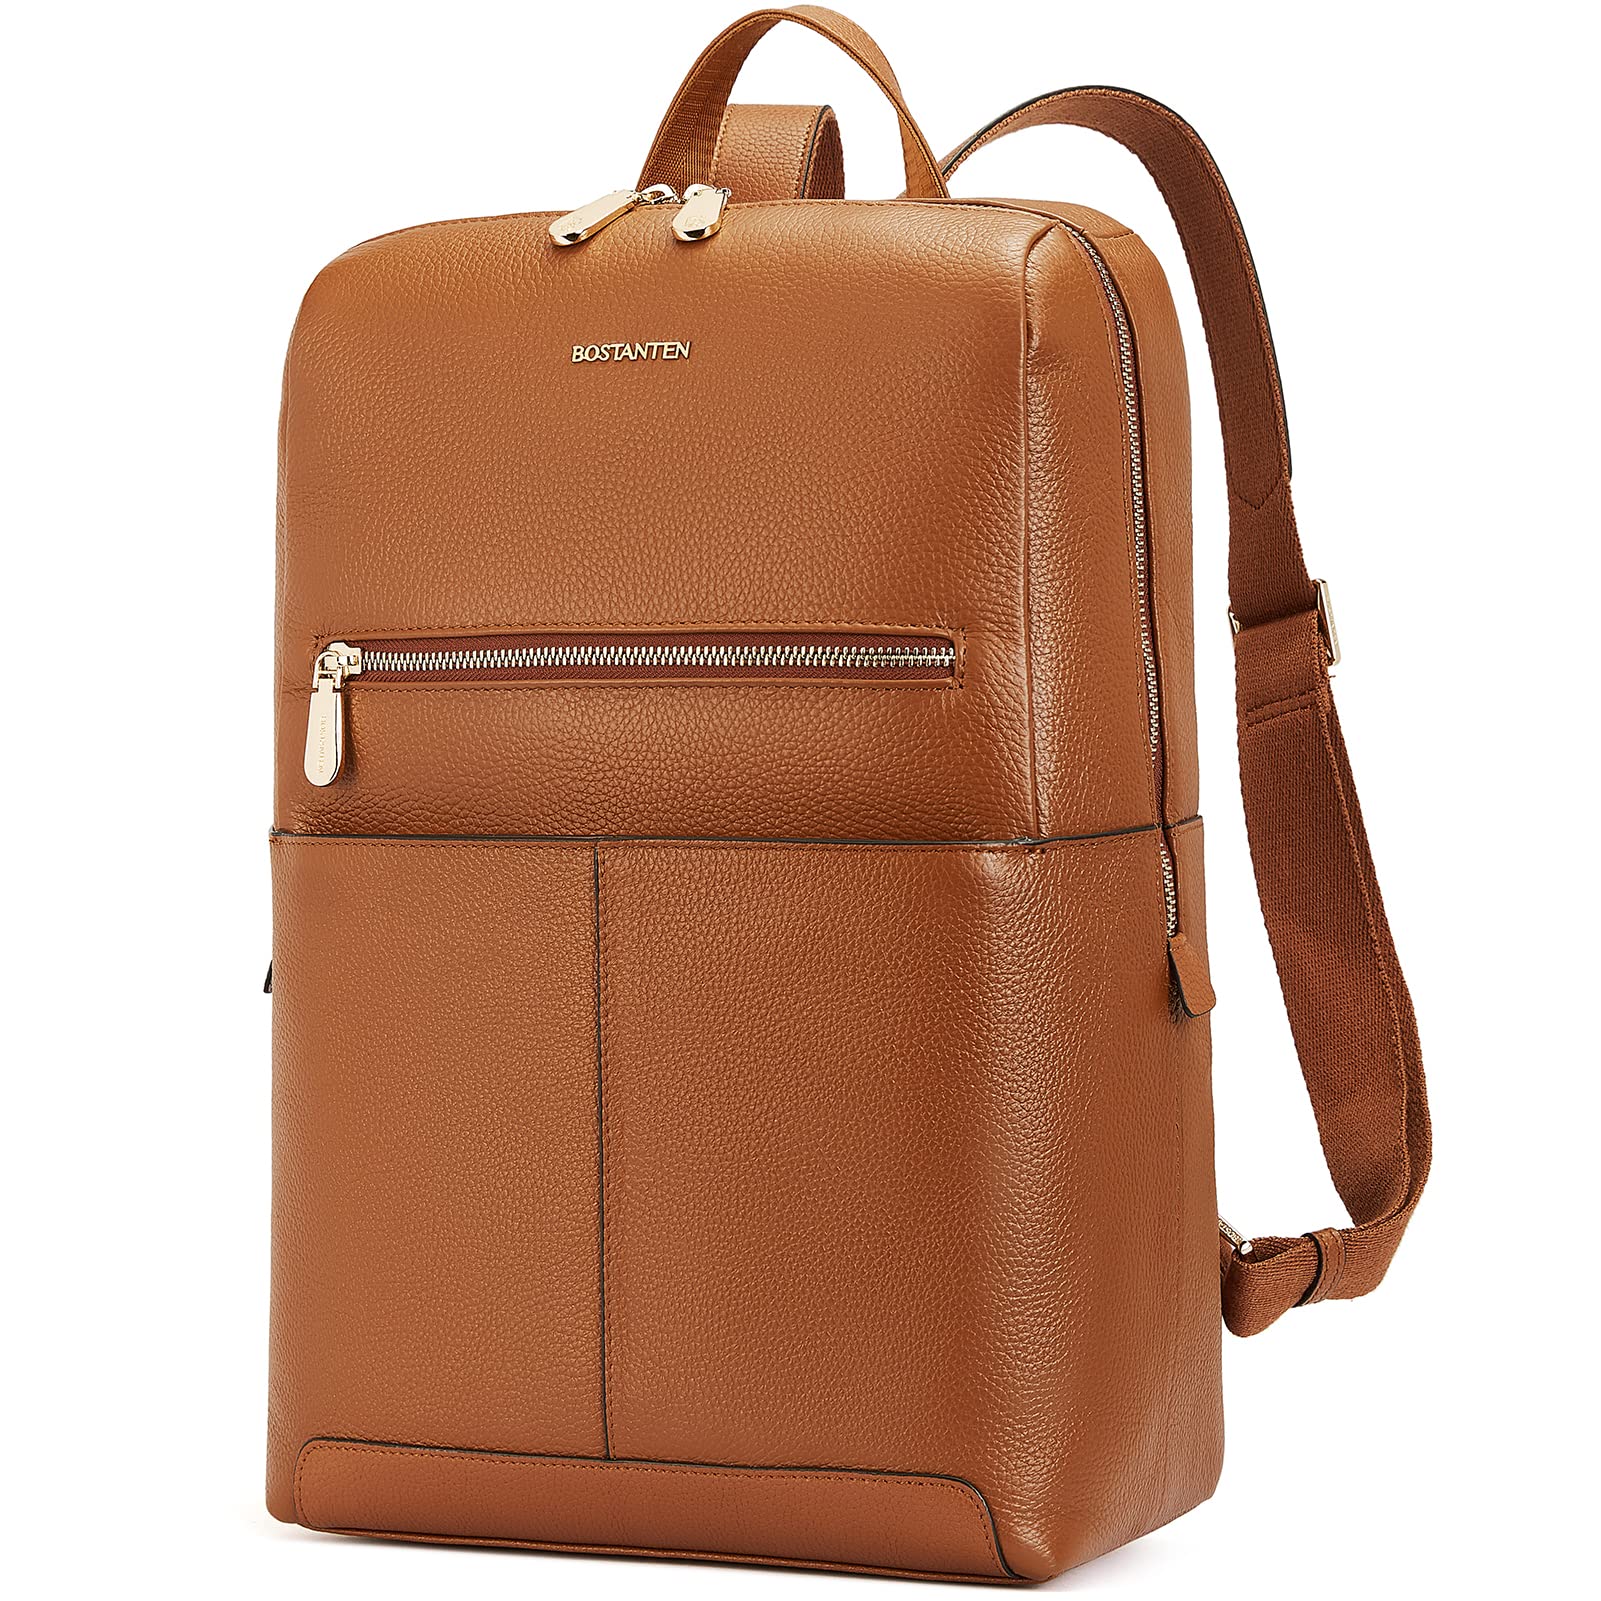 送料無料BOSTANTEN Leather Laptop Backpack for Women 15.6 inch Computer Bag College Shoulder Bag Casual Daypack Travel Bag